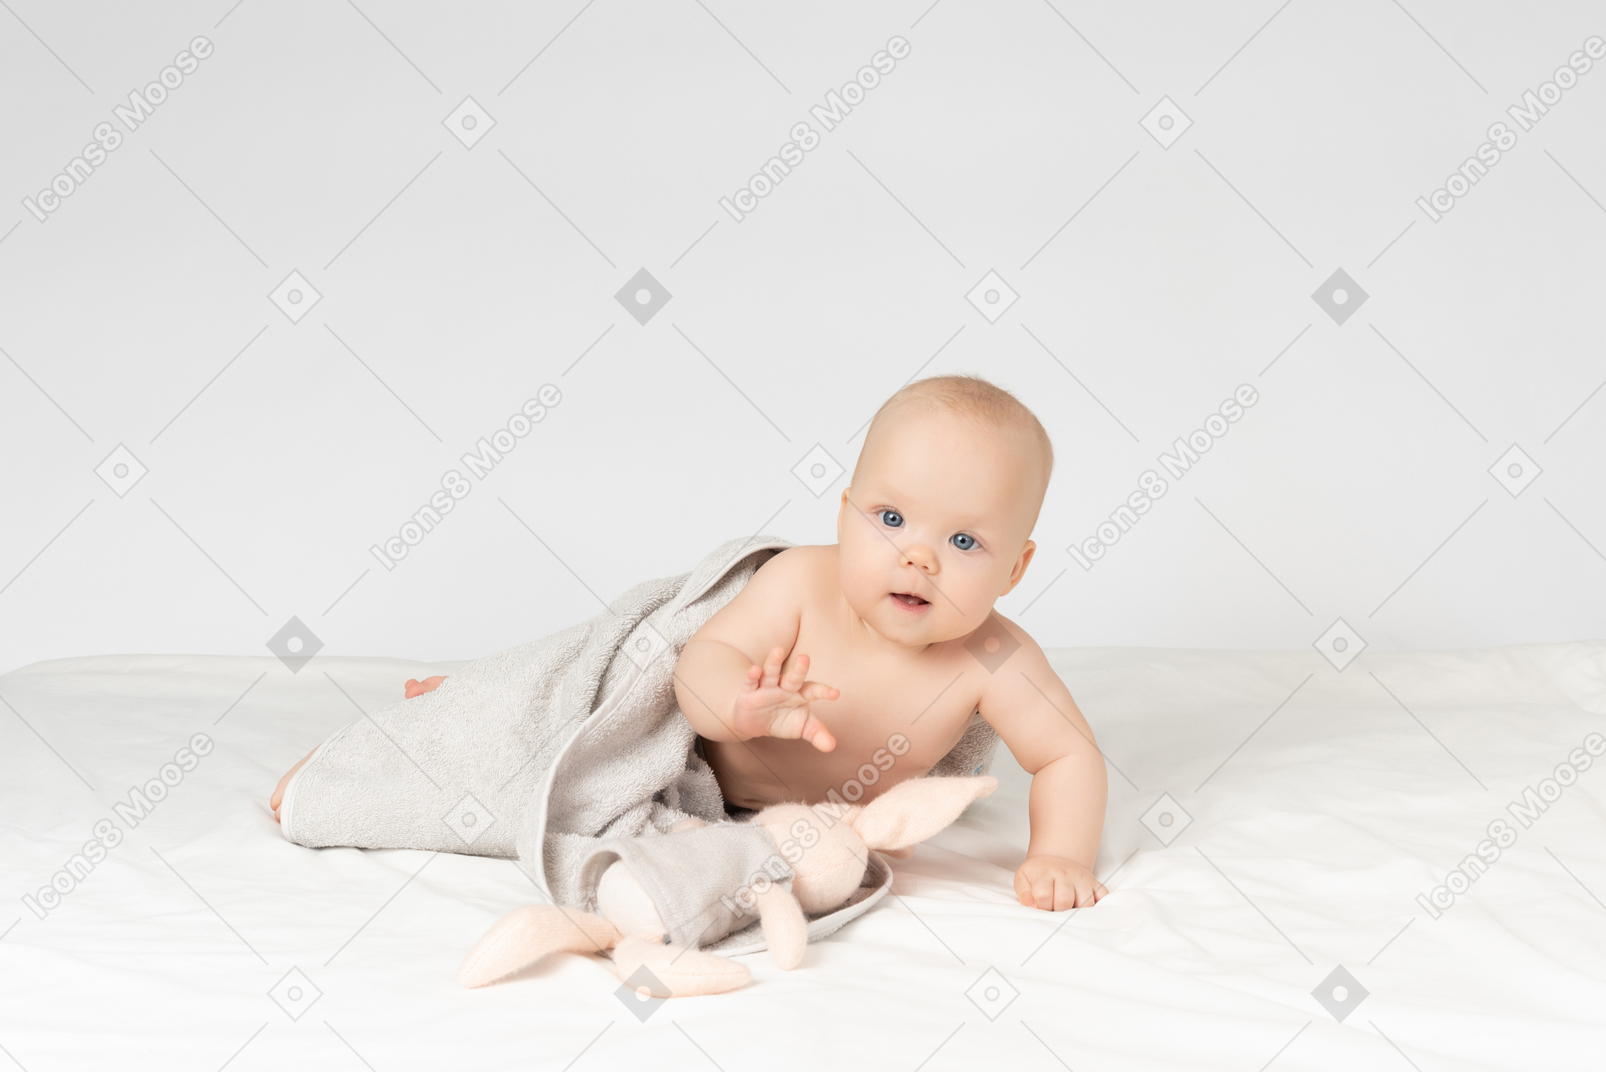 Niña cubierta de toalla y sosteniendo un juguete